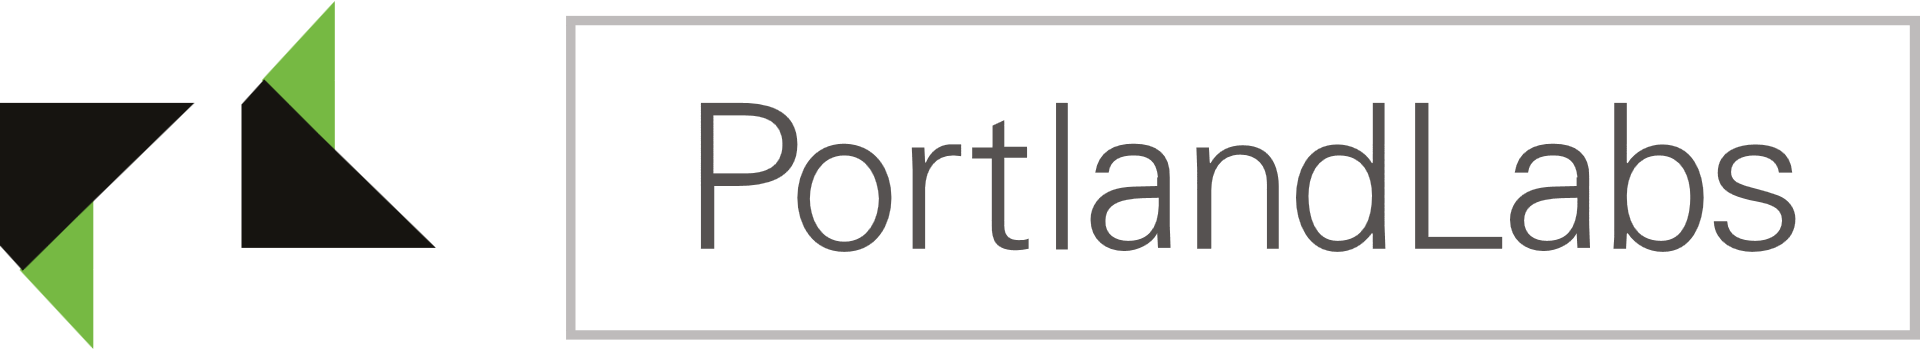 Portlandlabs